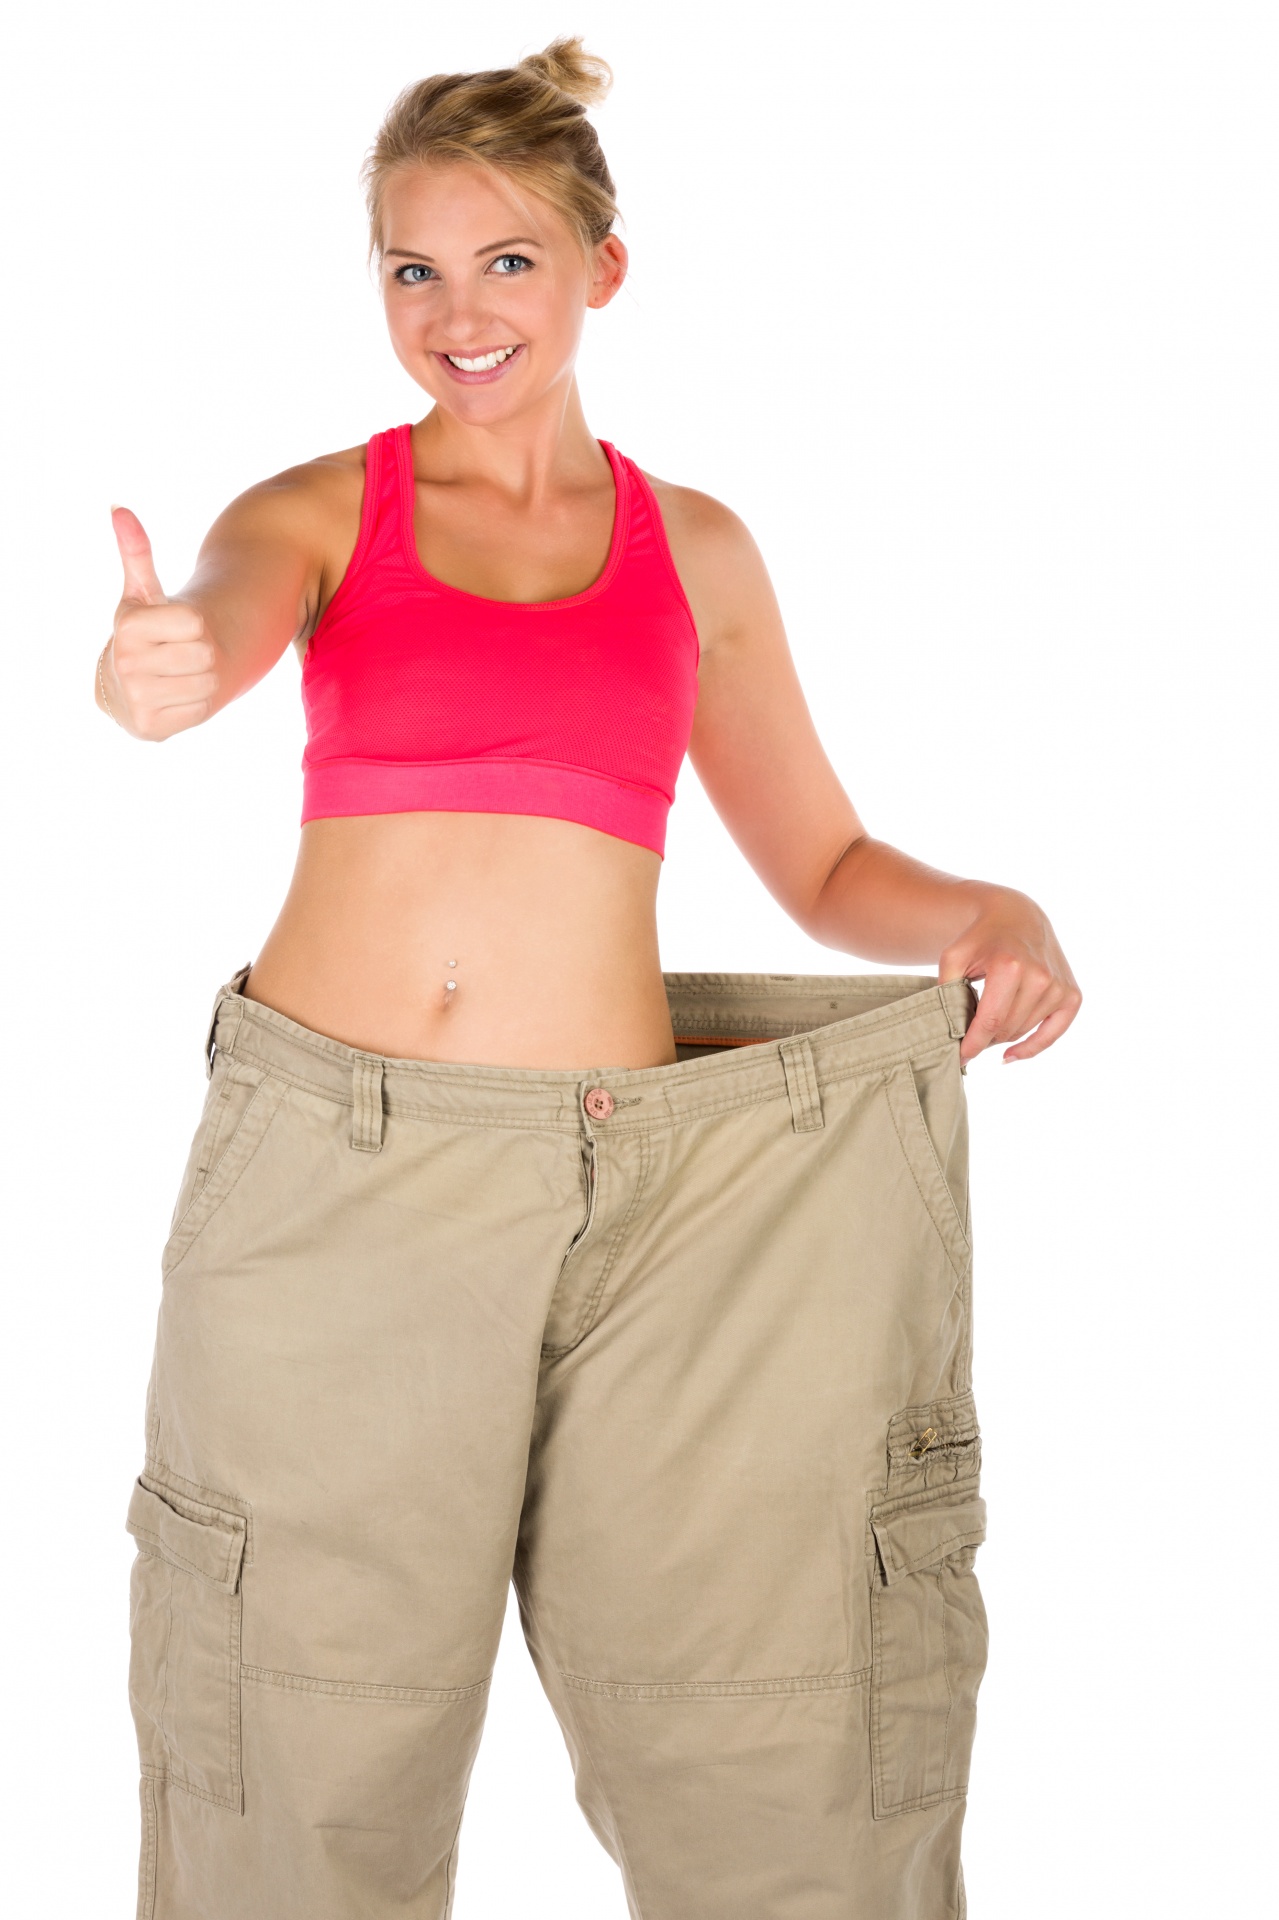 La donna in pantaloni dopo la dieta